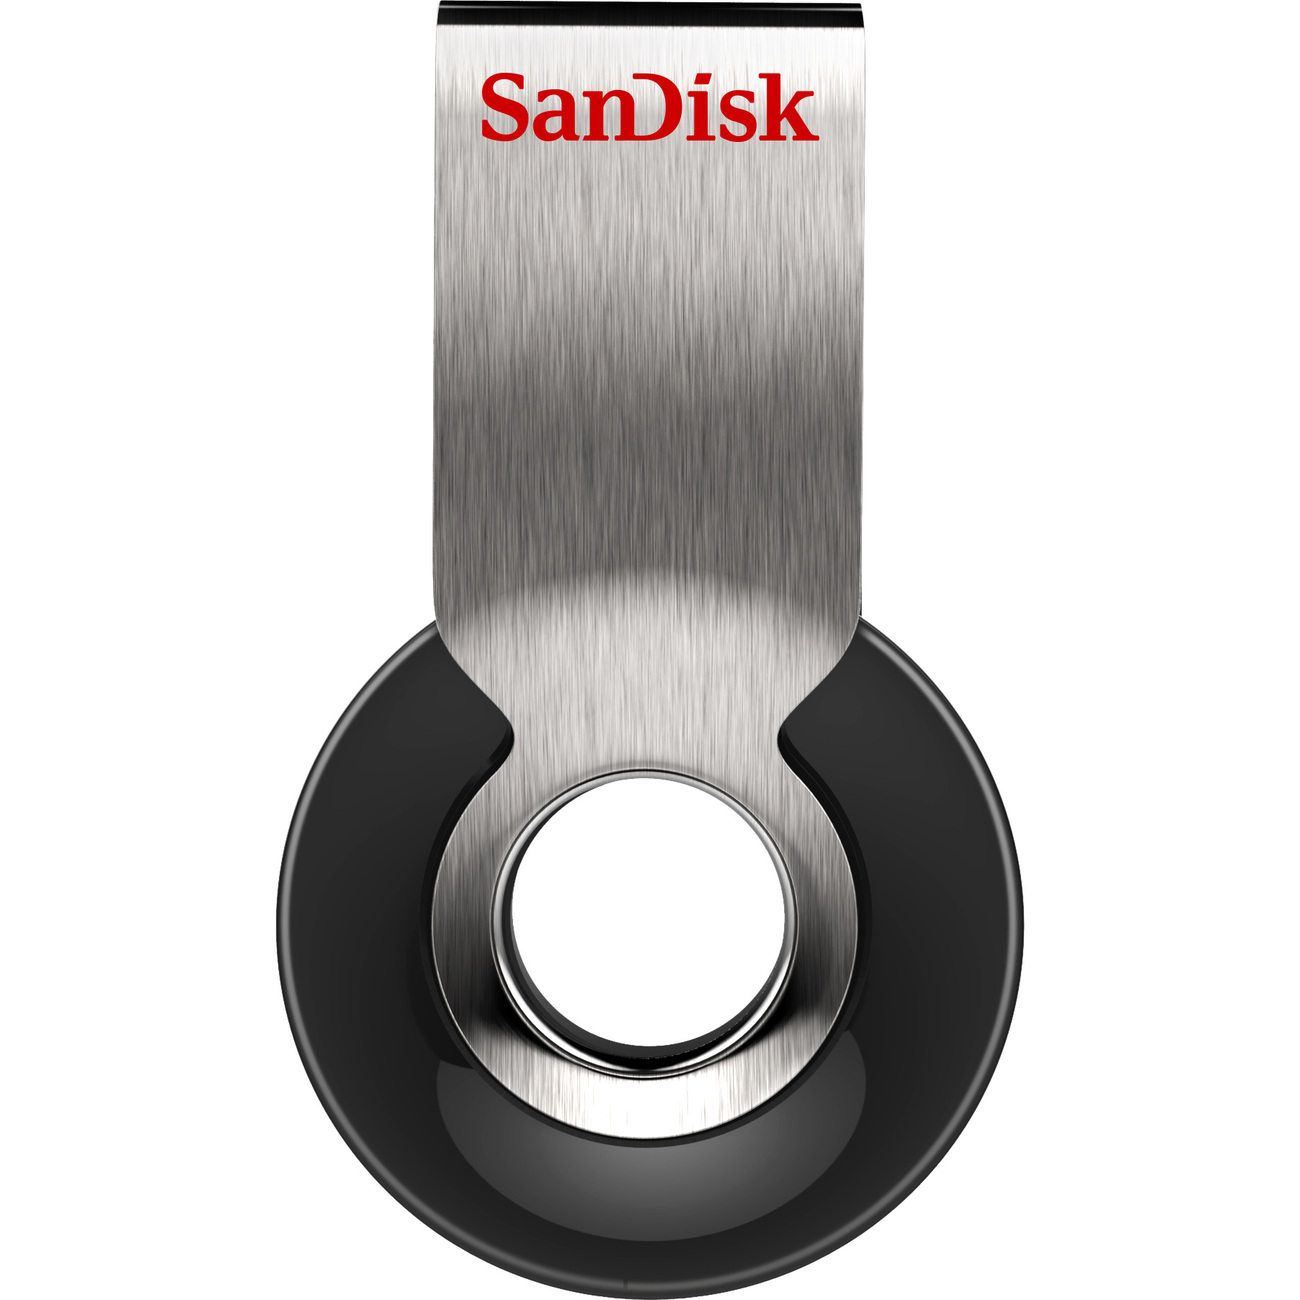 SanDisk Cruzer Orbit 16GB AM